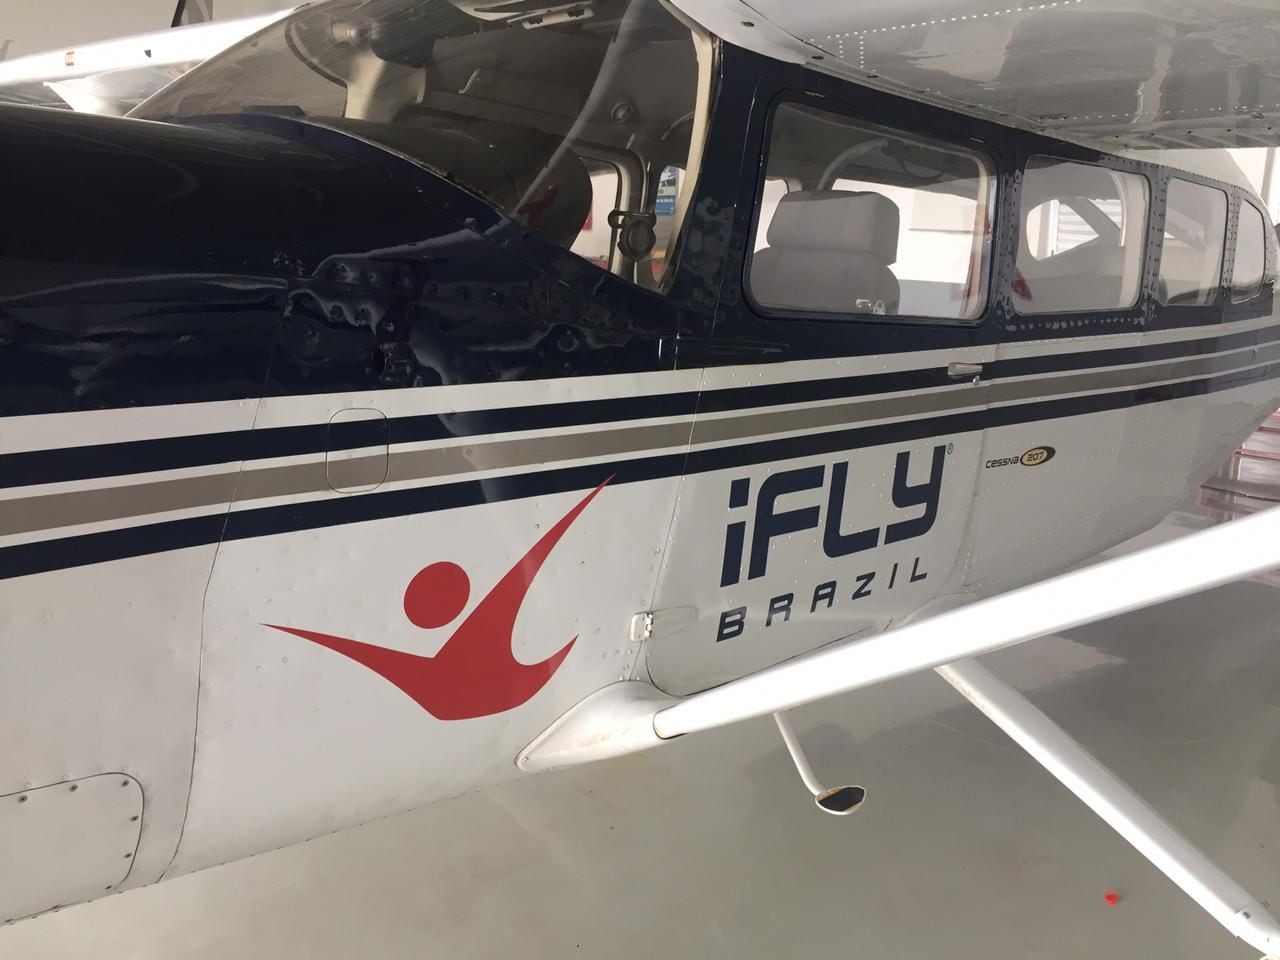 Uno de los distintivos con los que cuenta el Cessna 207, usado para las clases de paracaidismo.